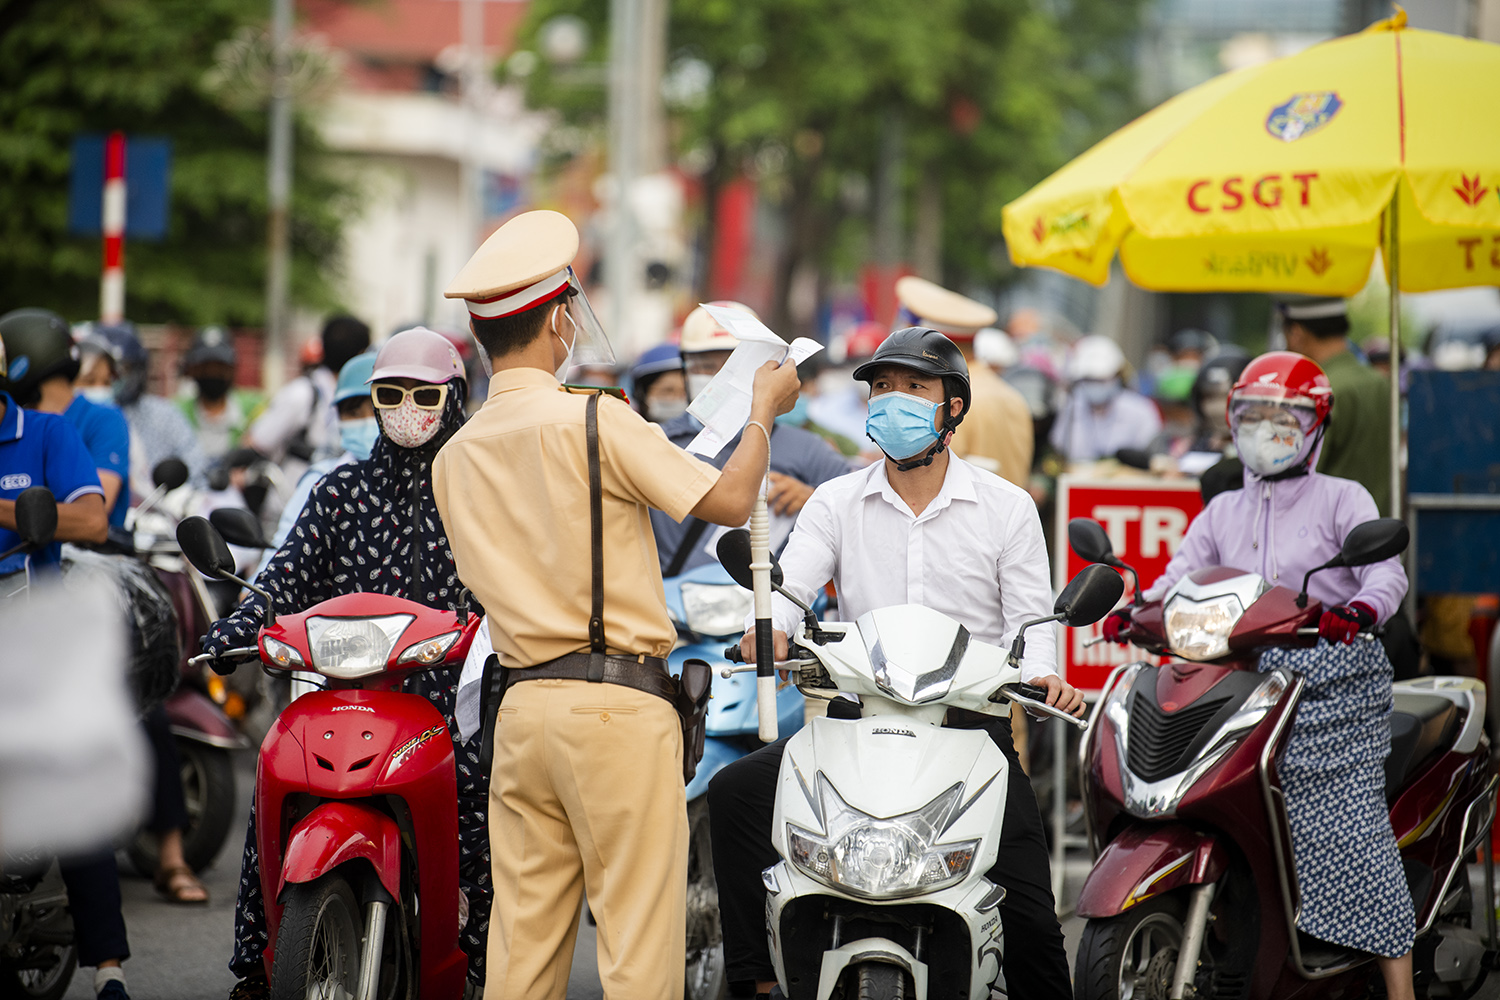 Sáng nay 6/9, Thành phố Hà Nội quyết định triển khai các biện pháp phòng chống dịch tại 3 vùng. Trong đó, Vùng 1 (vùng nội đô) tiếp tục áp dụng giãn cách xã hội theo Chỉ thị số 16/CT-TTg và áp dụng một số biện pháp ở mức cao hơn.